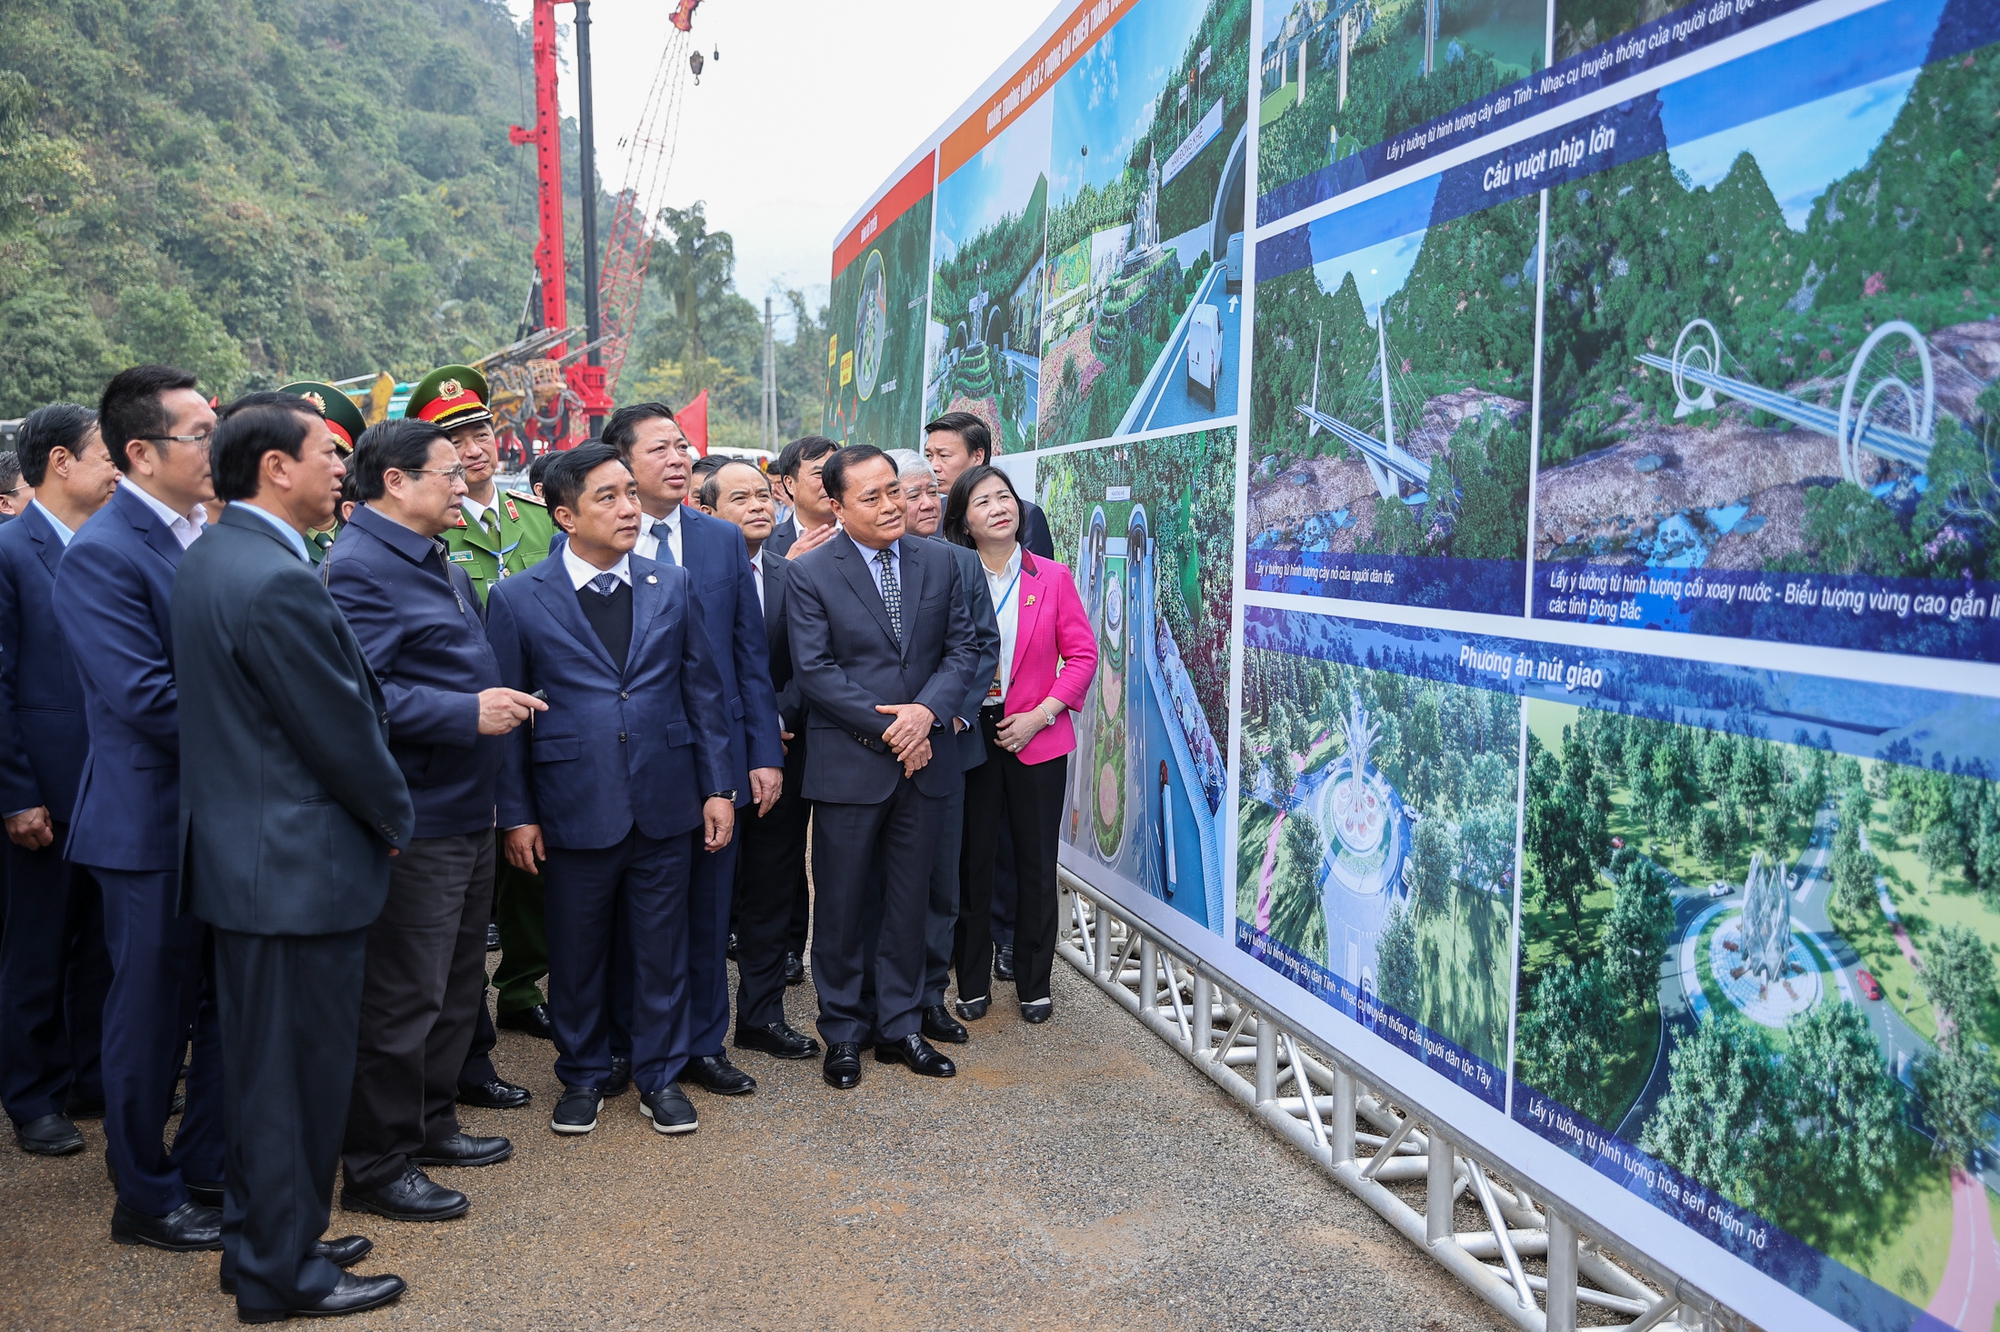 Thủ tướng nghe đơn vị thi công trình bày các điểm nhấn trên tuyến cao tốc Đồng Đăng - Trà Lĩnh - Ảnh: VGP/Nhật Bắc